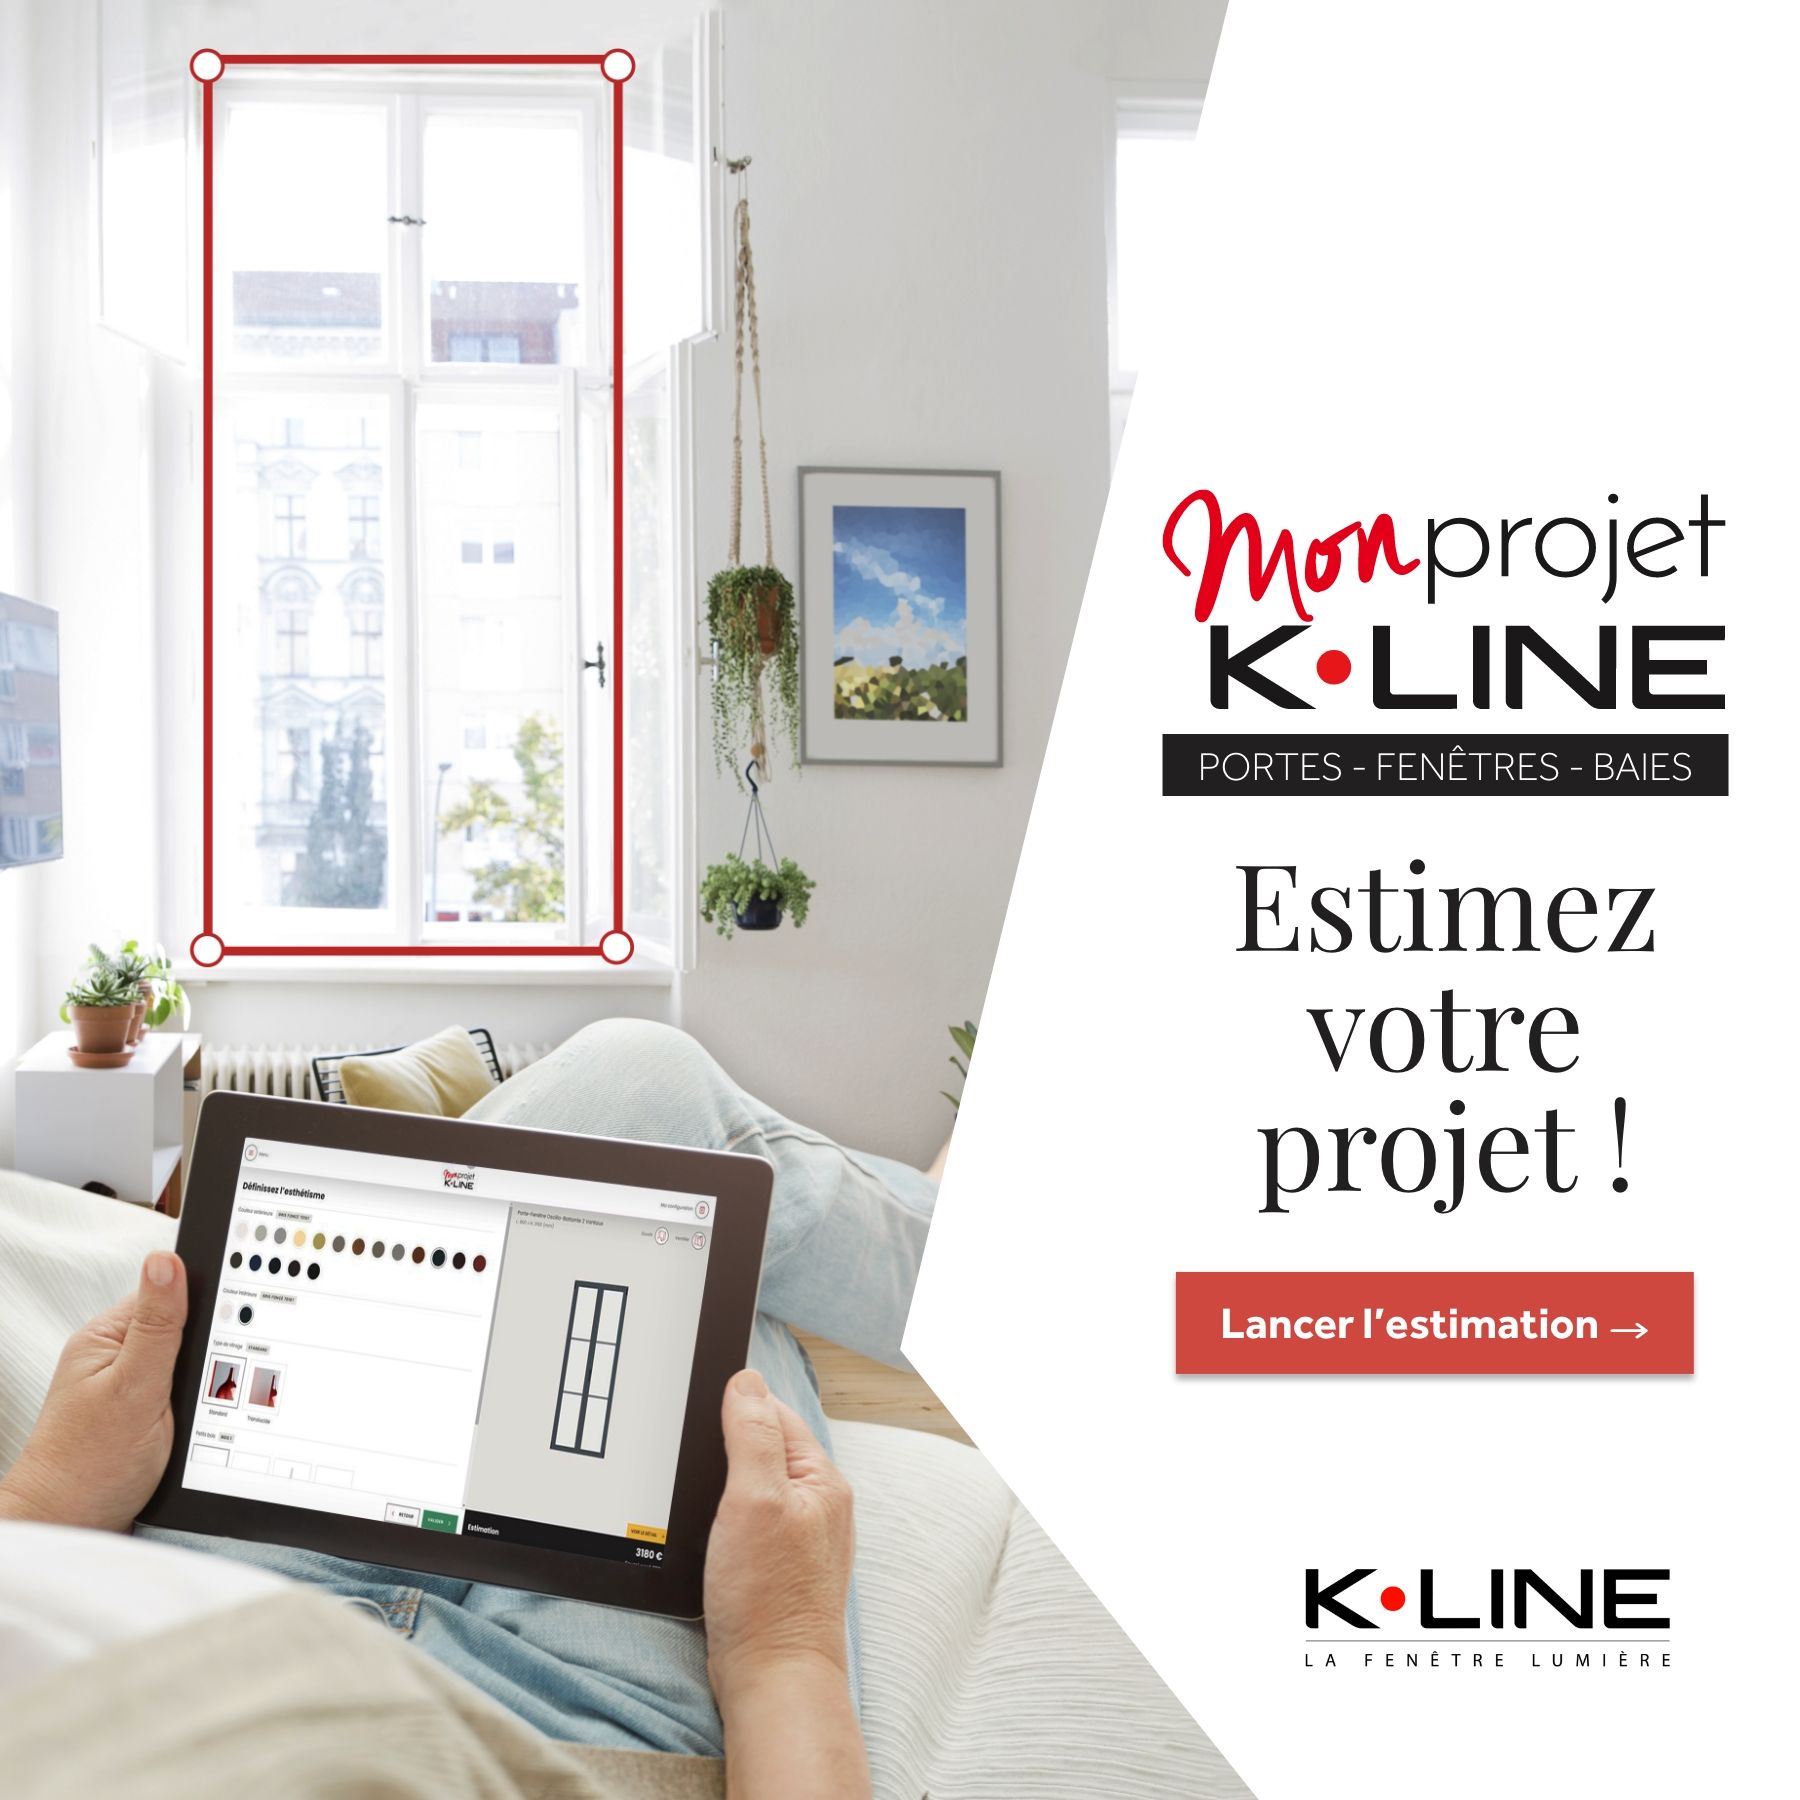 Configurateur et simulateur en ligne K.LINE